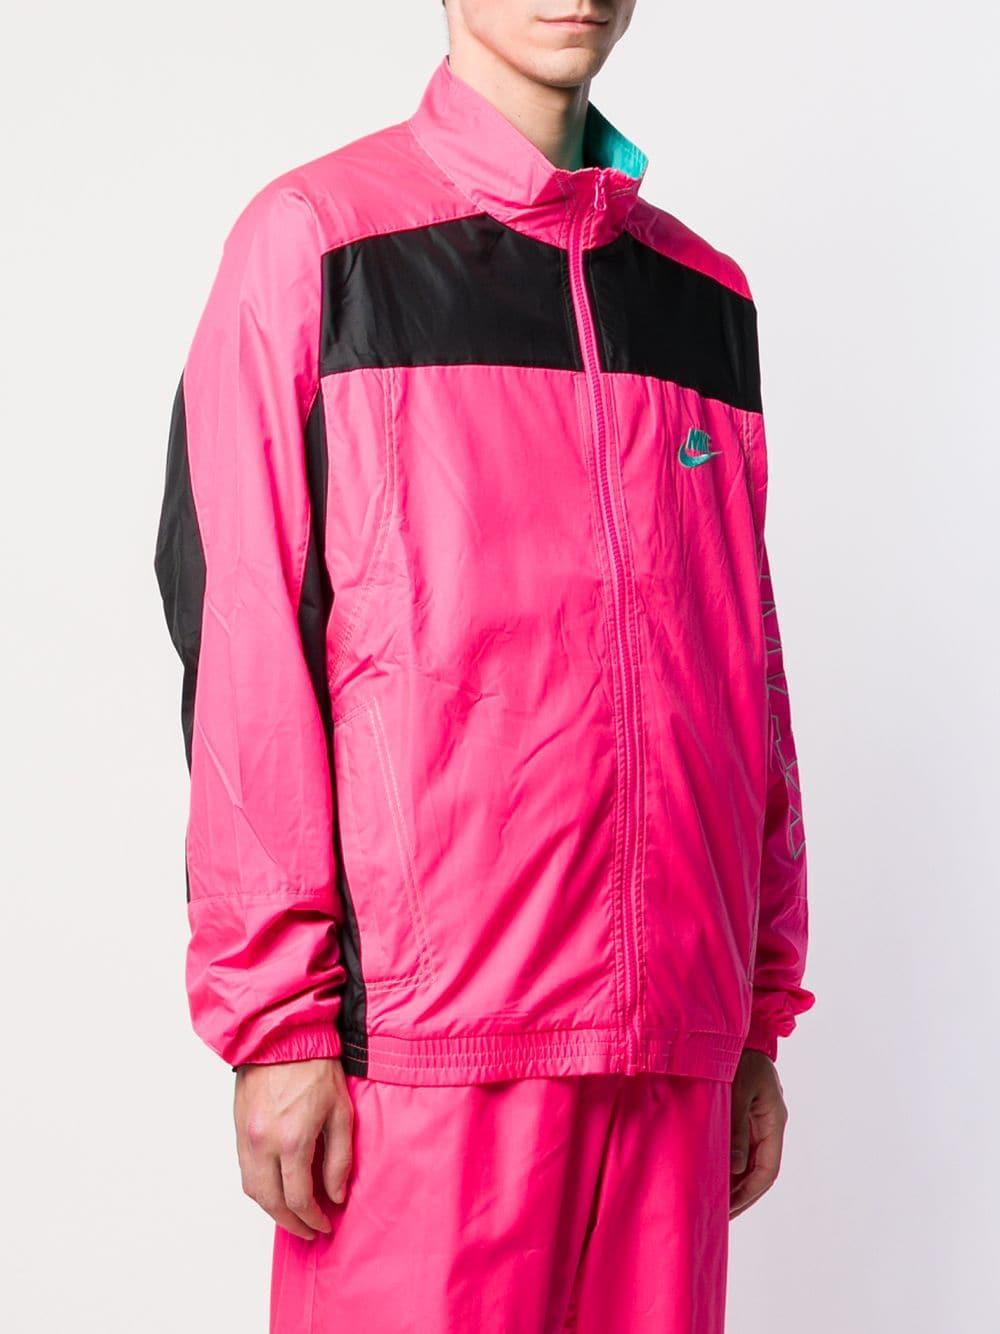 Noroeste discreción Allí Nike Men's Pink Atmos Vintage Patchwork Track Jacket